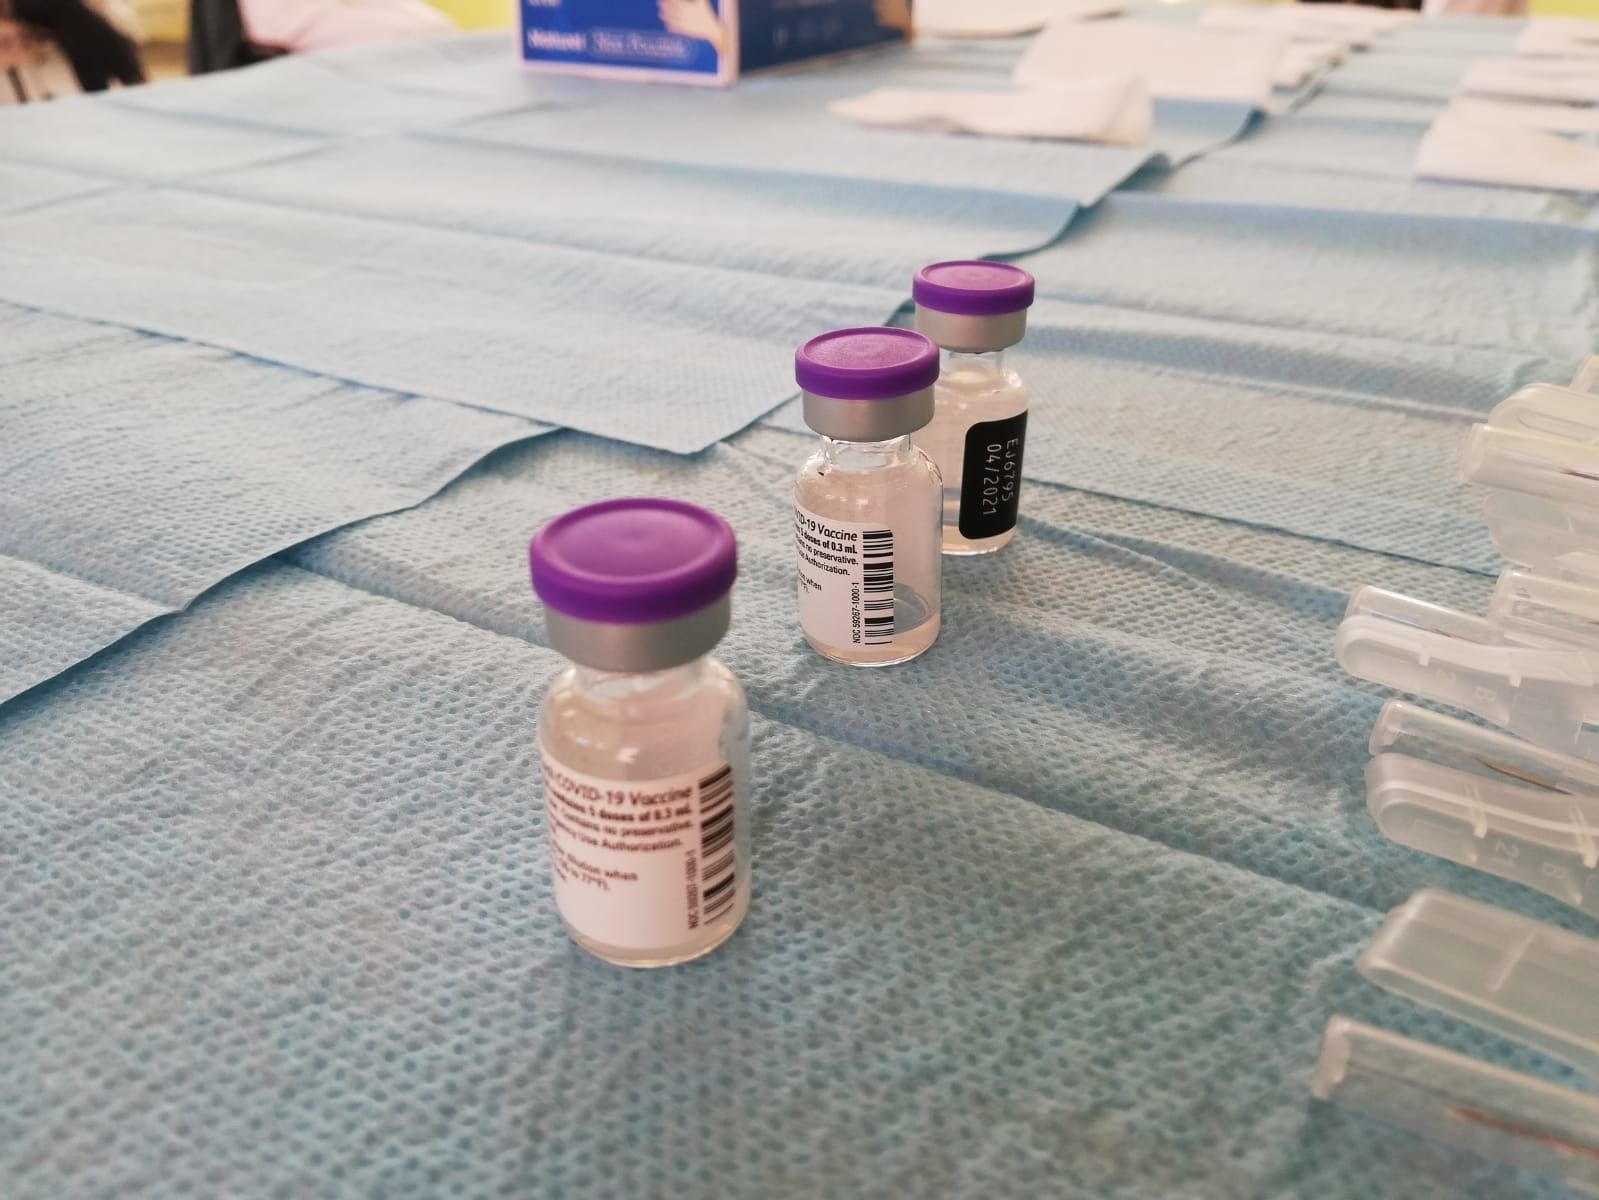 La EMA vincula la vacuna de Janssen a casos raros de trombos pero avala su uso sin restricciones